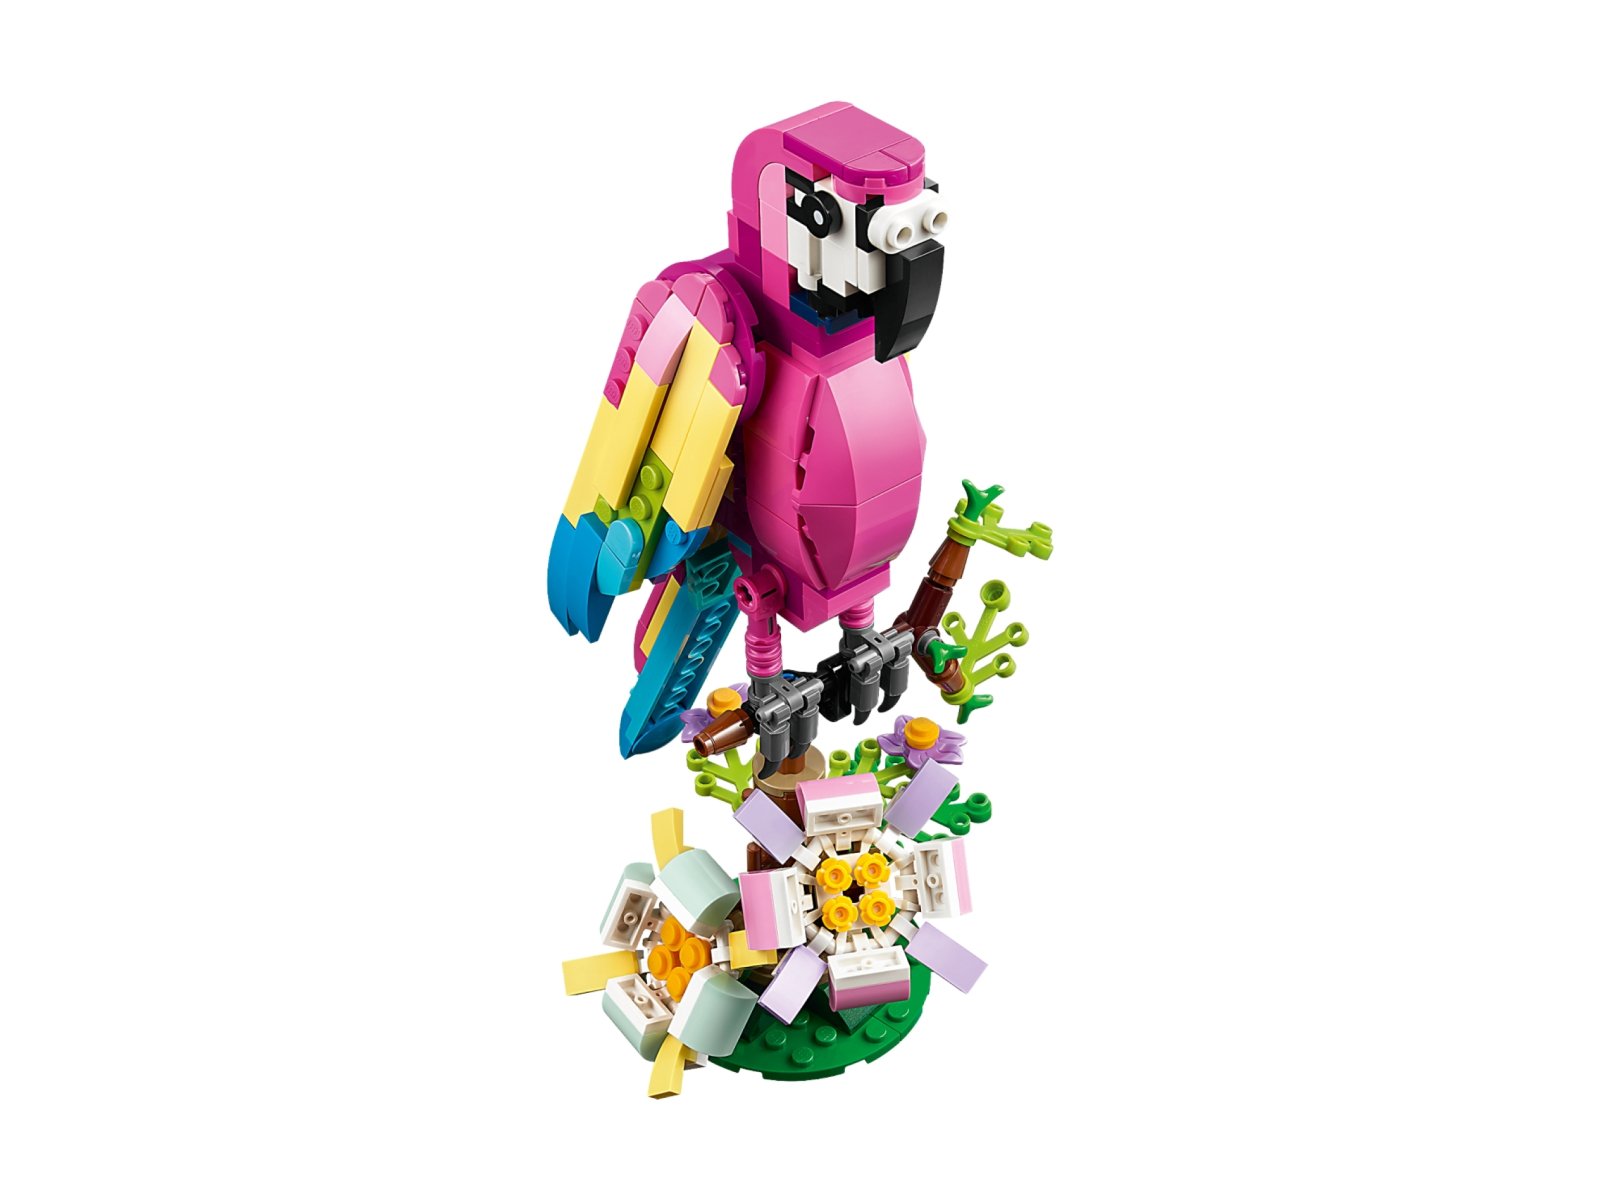 LEGO 31144 Creator 3 w 1 Egzotyczna różowa papuga